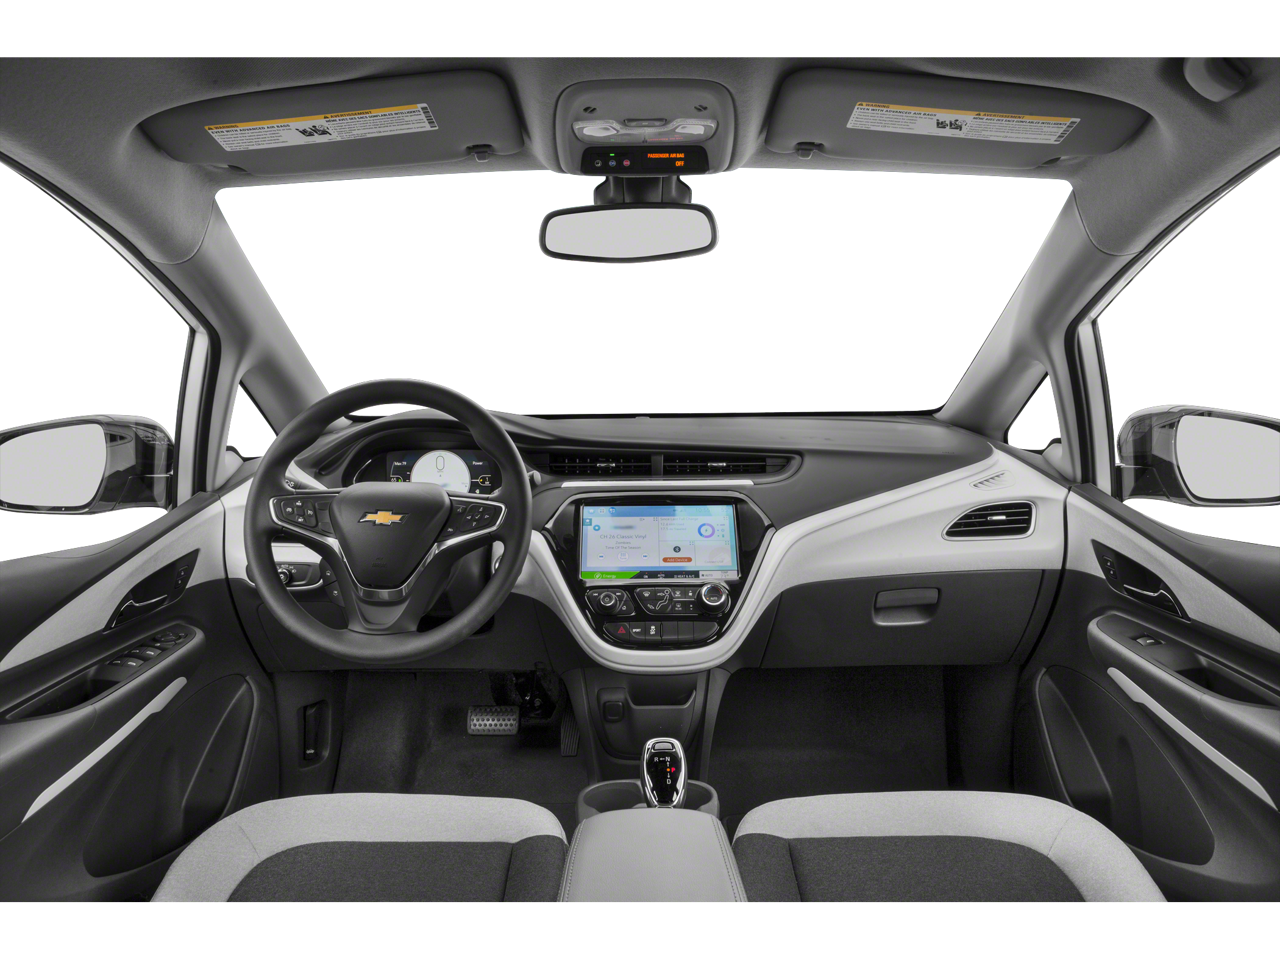 2019 Chevrolet Bolt EV LT Hatchback 4D